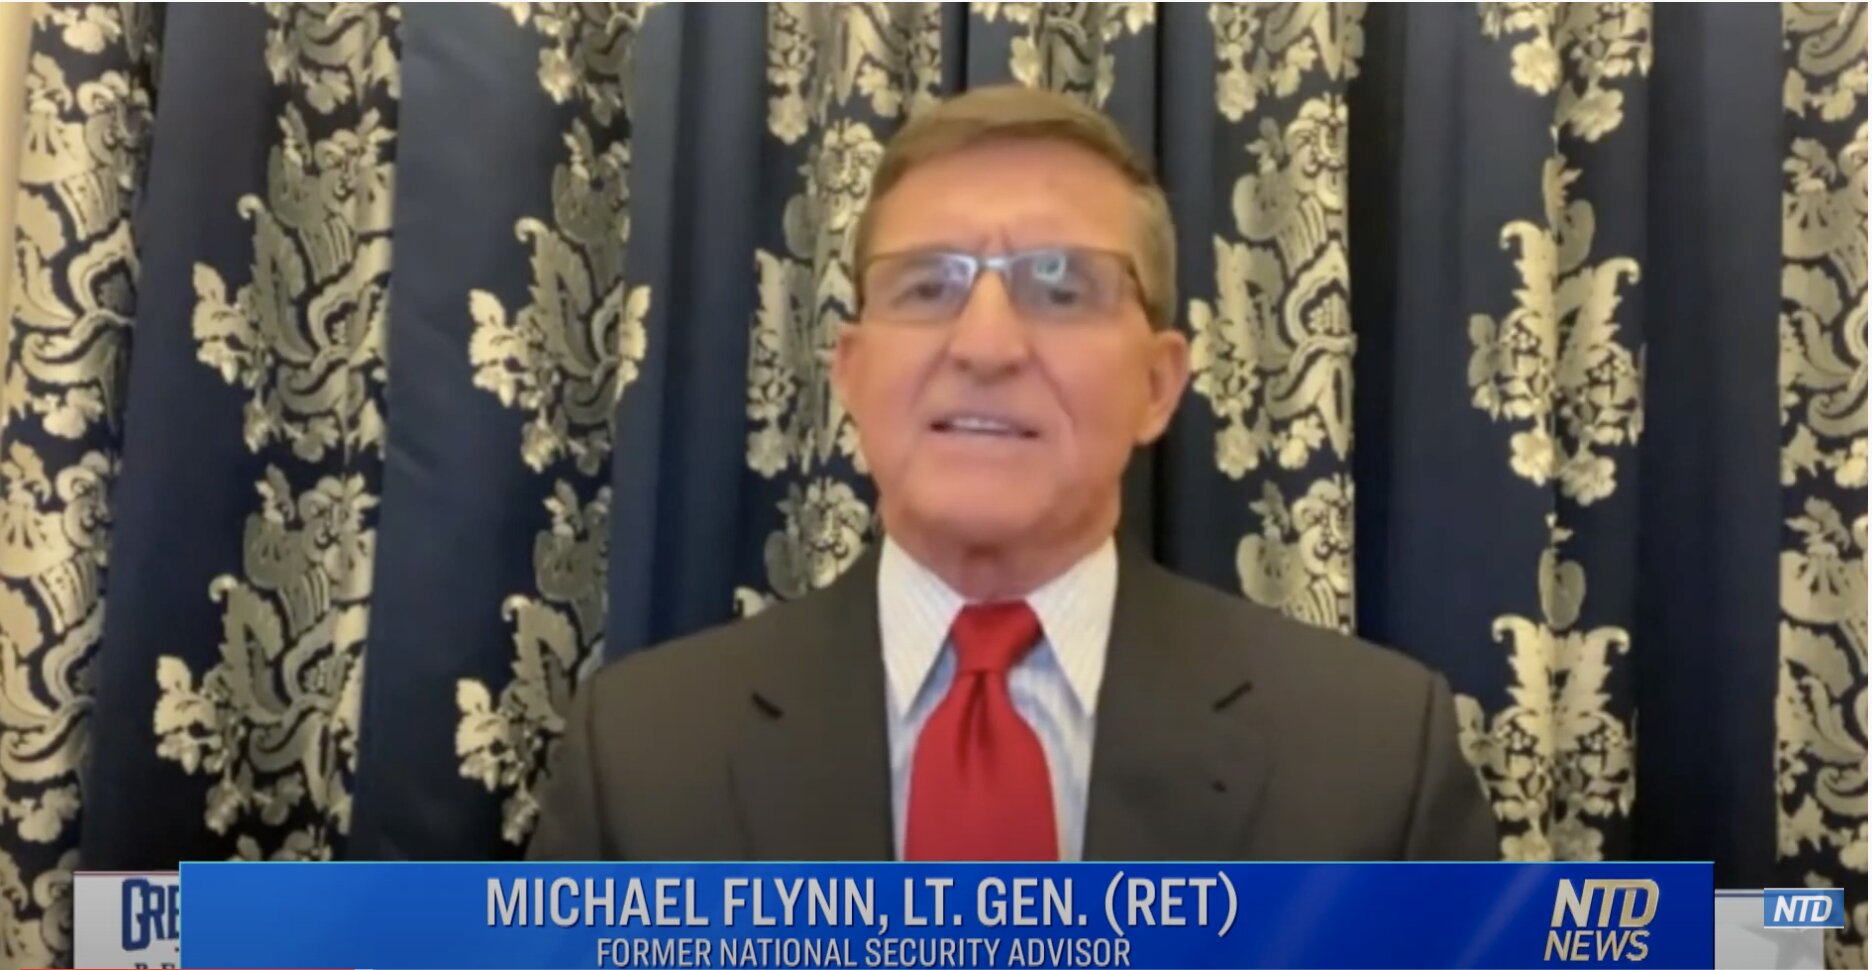 ΕΝΗΜΕΡΩΣΗ ΚΑΤΑΣΤΑΣΗΣ ΤΩΝ ΗΠΑ: Ο στρατηγός Flynn φαίνεται να καλεί τον Τράμπ να επικαλεστεί την Πράξη Εξέγερσης. Επιβεβαιώνει την «ξένη παρέμβαση» στις εκλογές των ΗΠΑ.